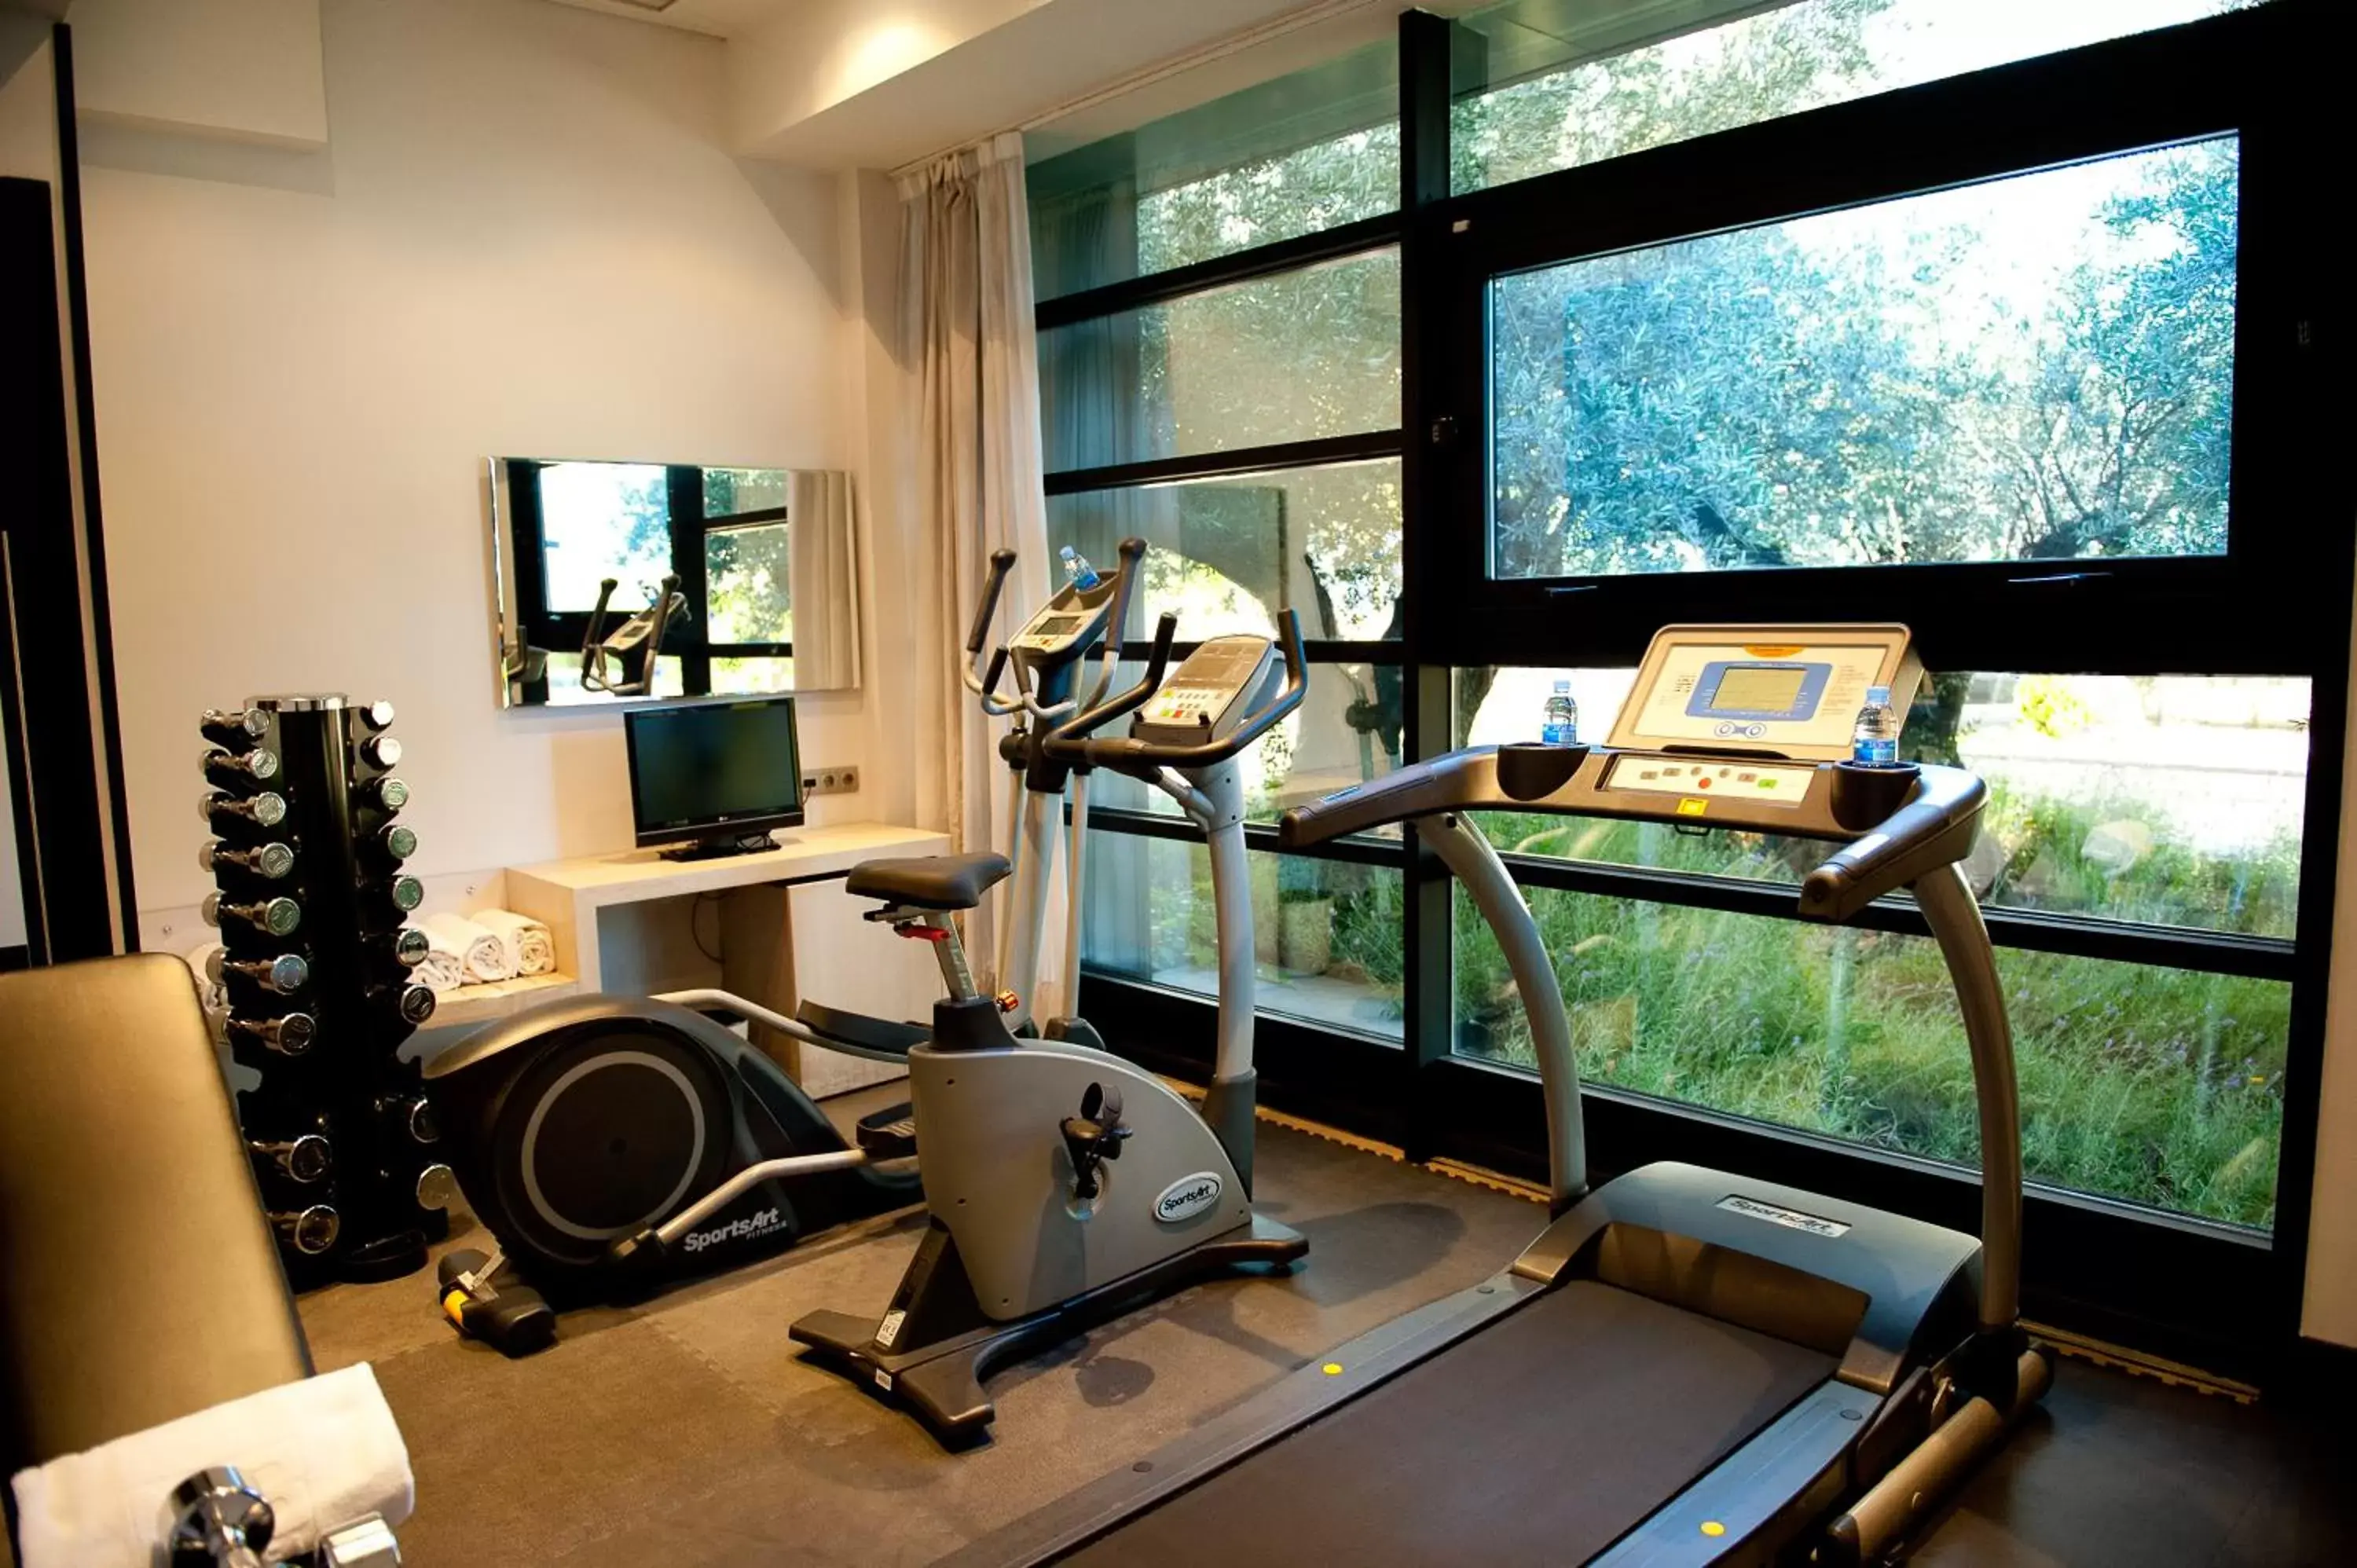 Fitness centre/facilities, Fitness Center/Facilities in Hotel Nuevo Boston